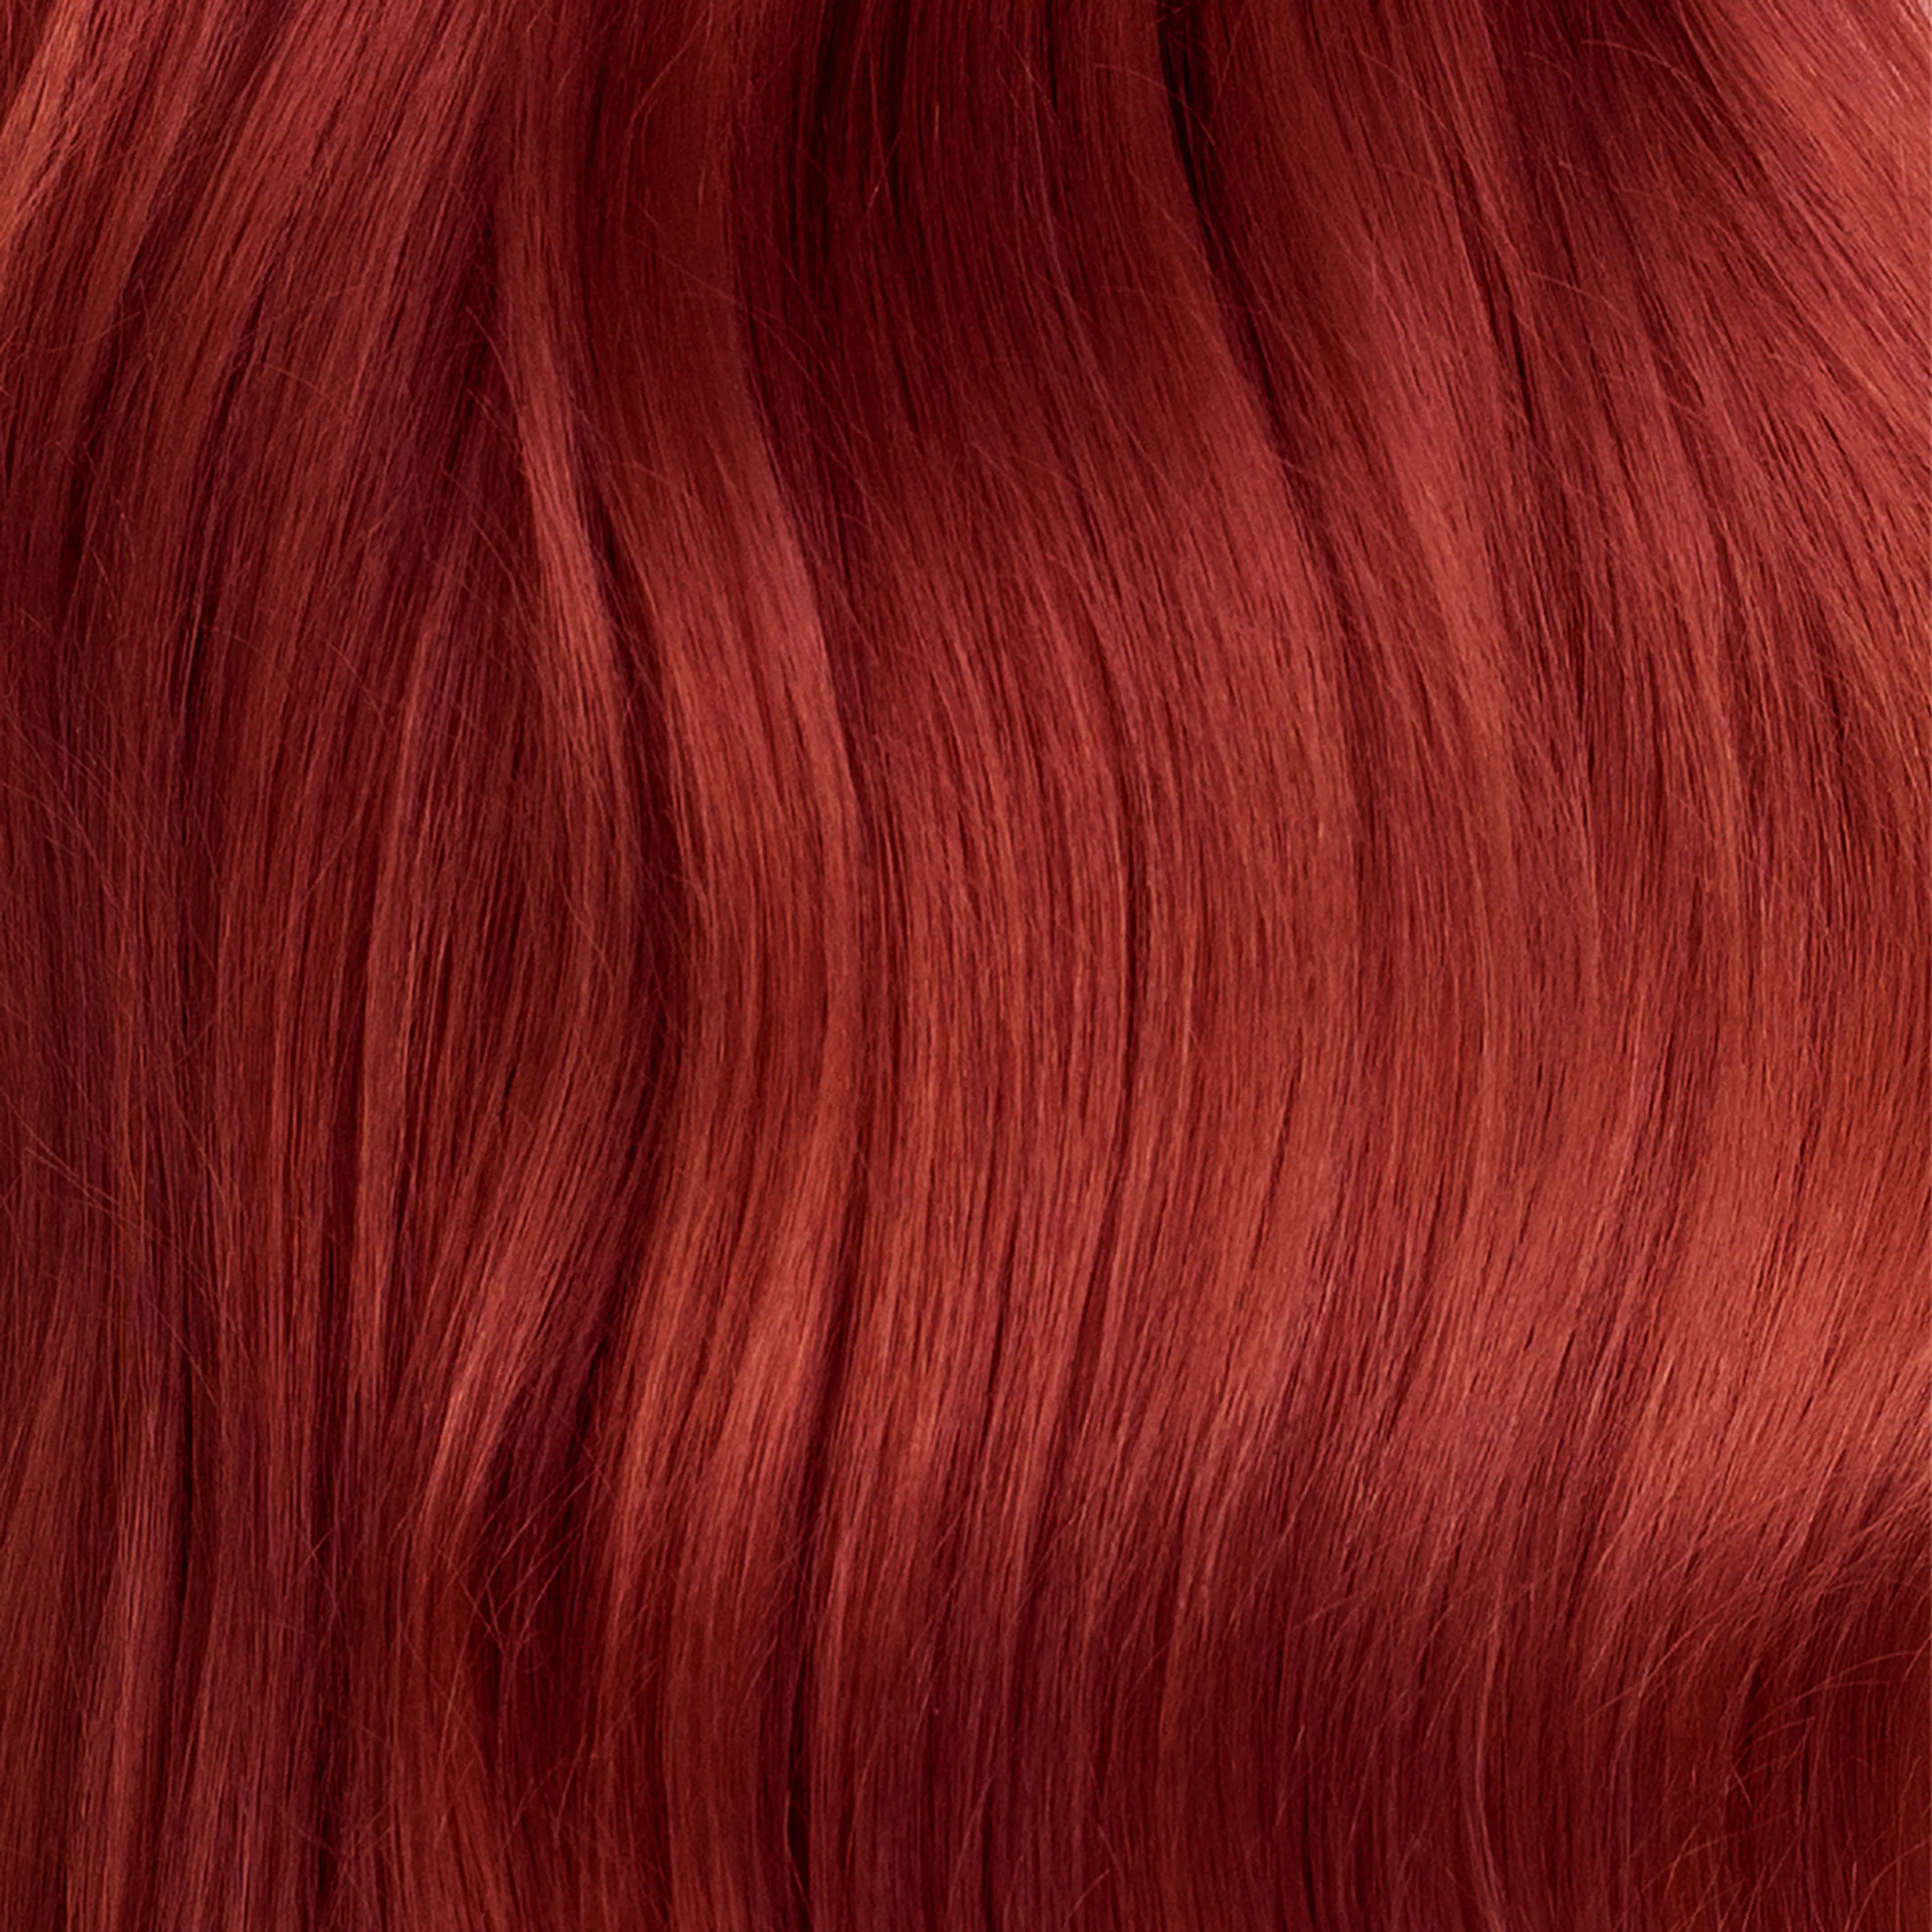 Vivahde Hair 8 RR Intensiivinen Punainen hiusväri  60 ml